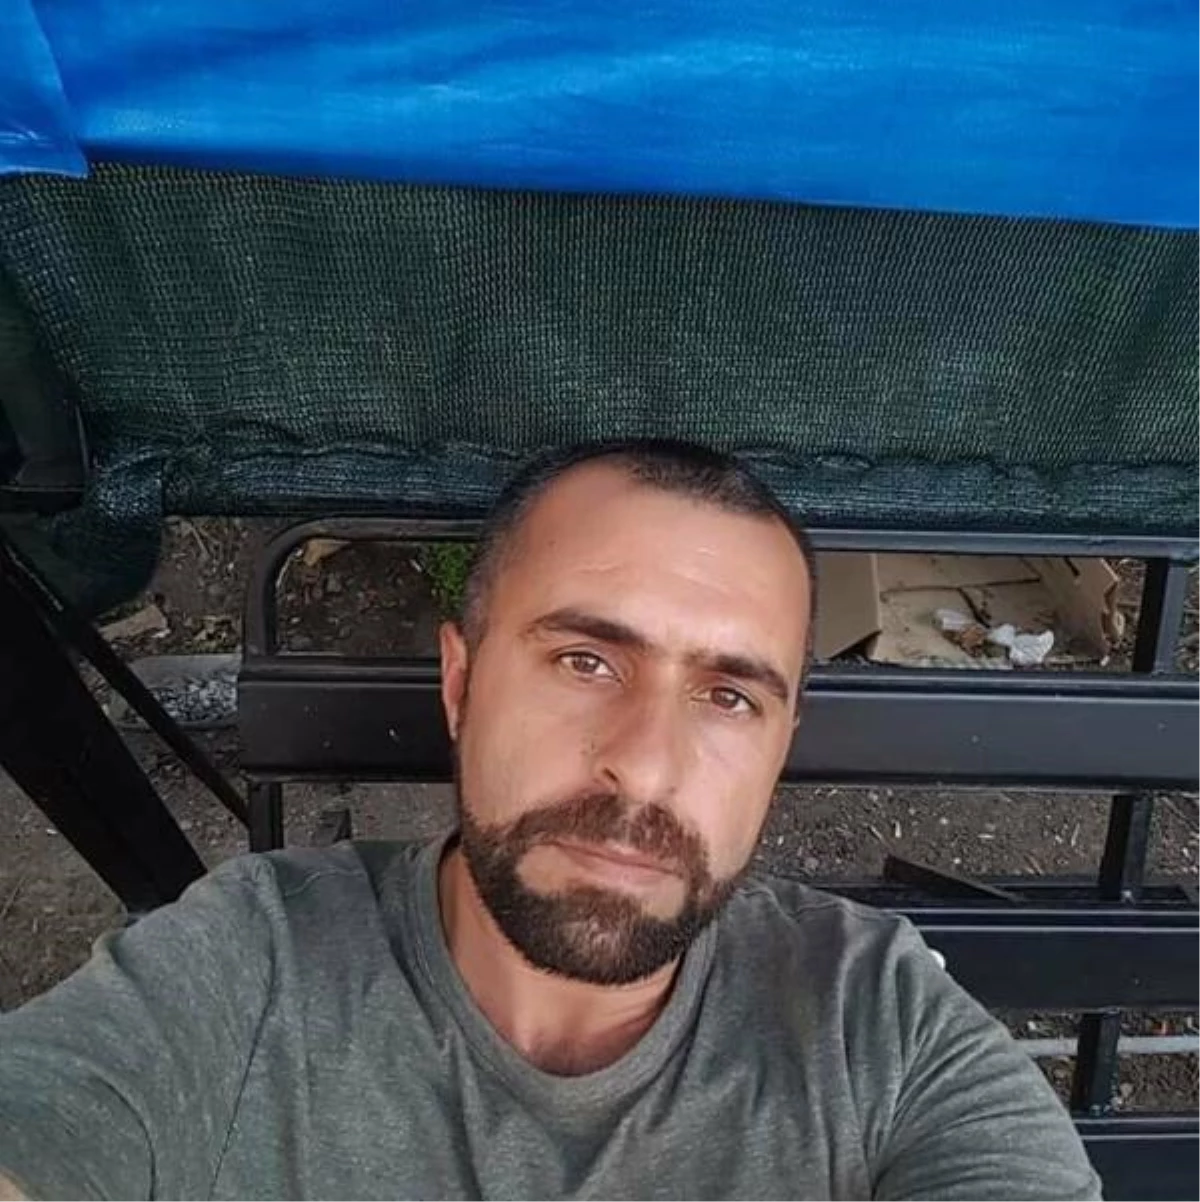 İzmir'de Baba Oğlu İşe Gitmek İçin Tartıştı, Baba Pompalı Tüfekle Oğlunu Öldürdü